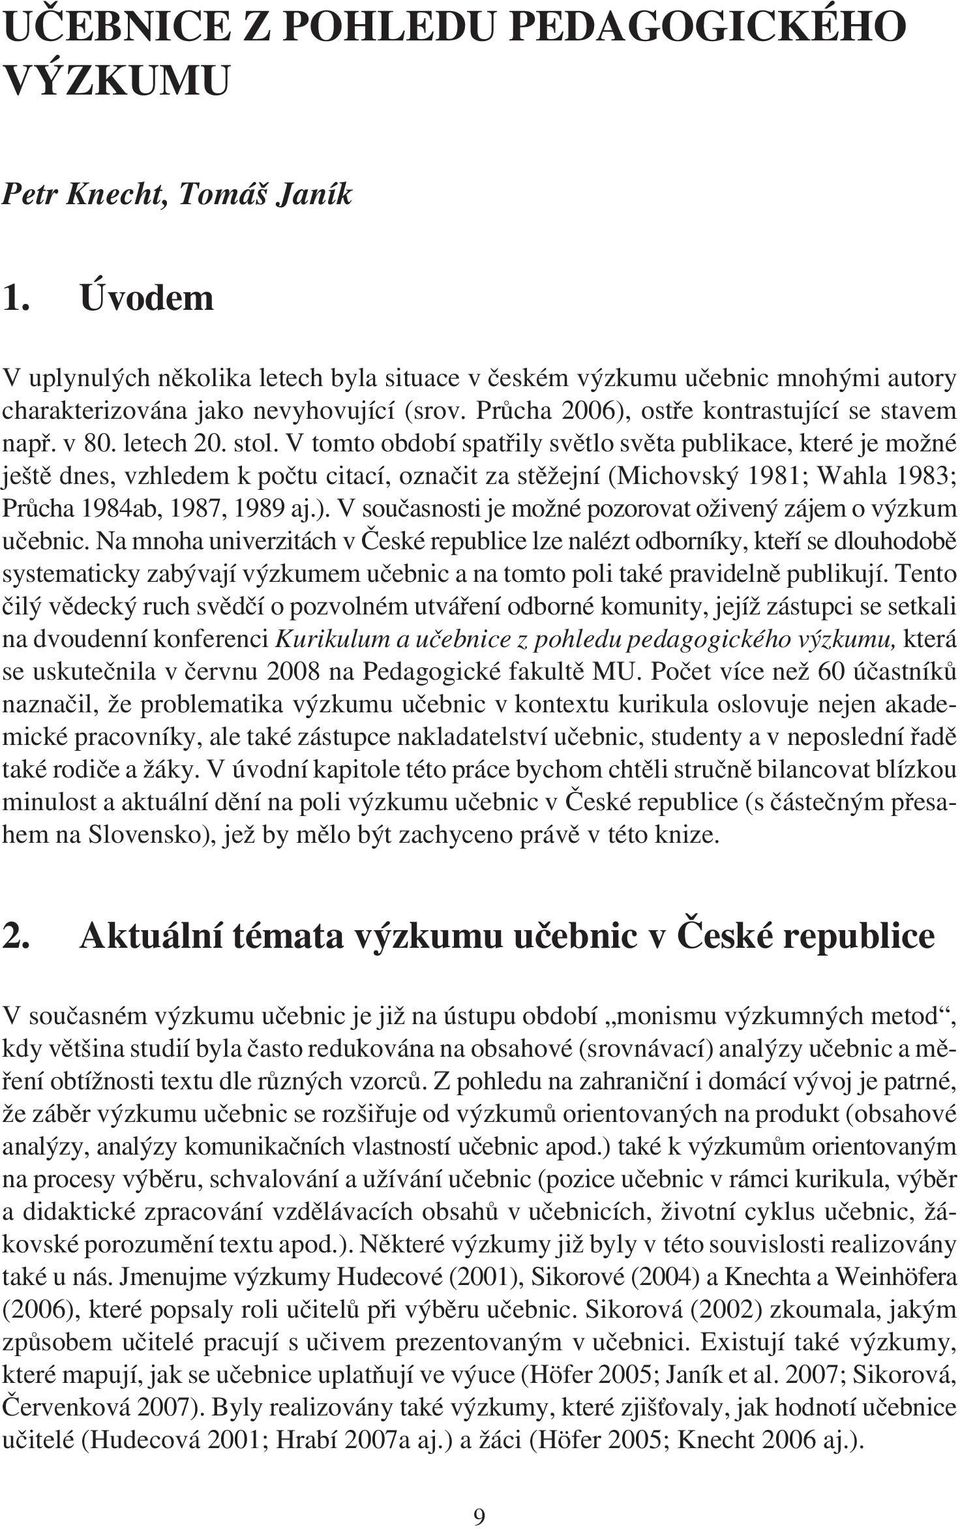 V tomto období spatøily svìtlo svìta publikace, které je možné ještì dnes, vzhledem k poètu citací, oznaèit za stìžejní (Michovský 1981; Wahla 1983; Prùcha 1984ab, 1987, 1989 aj.).